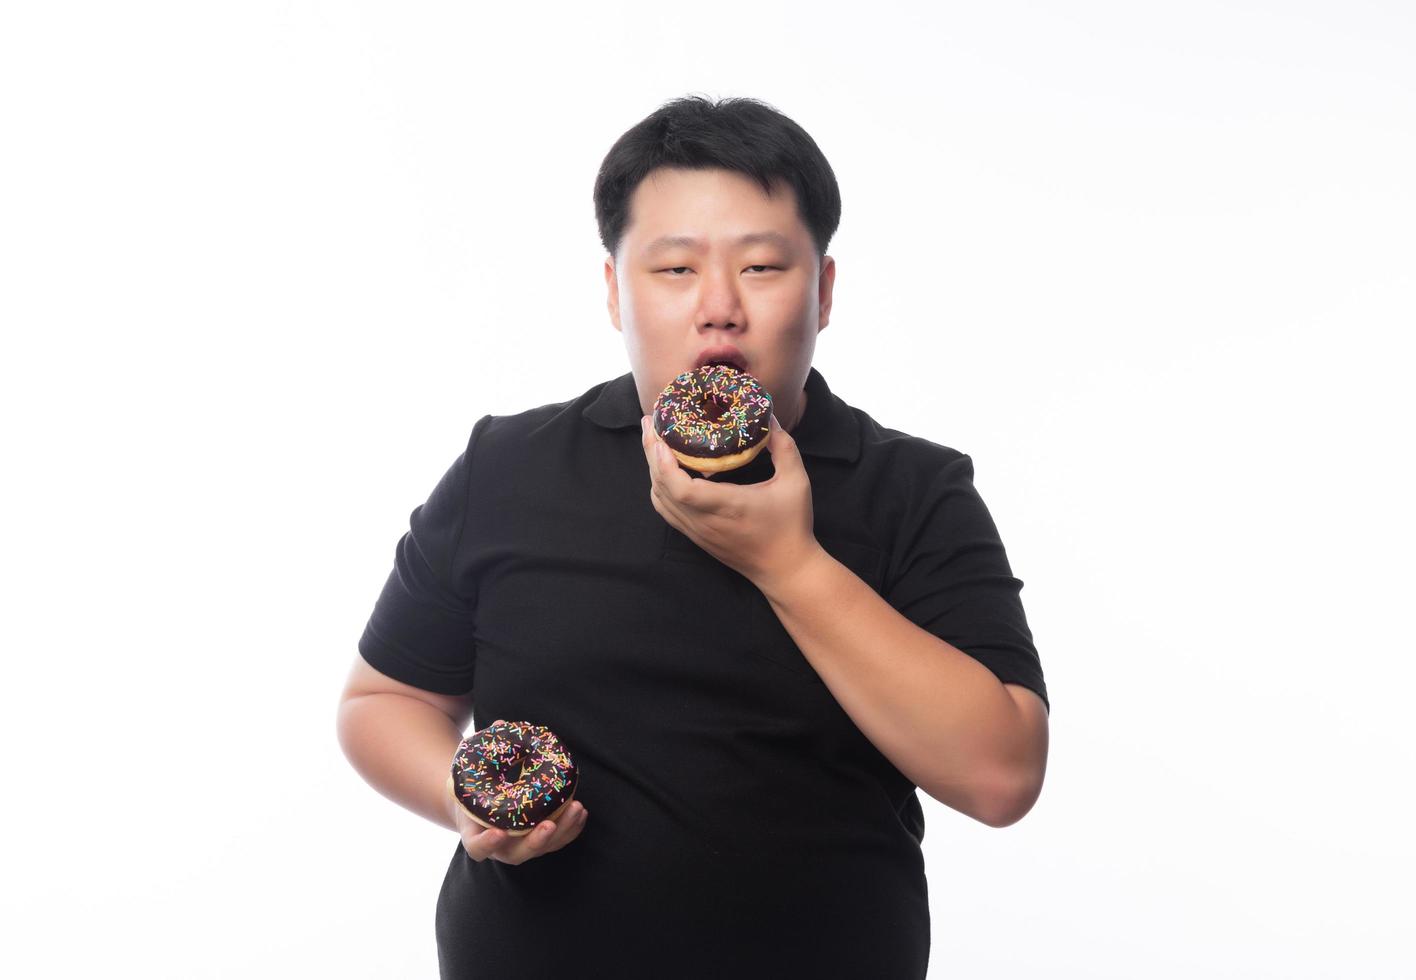 jovem gordo asiático comendo donuts de chocolate foto